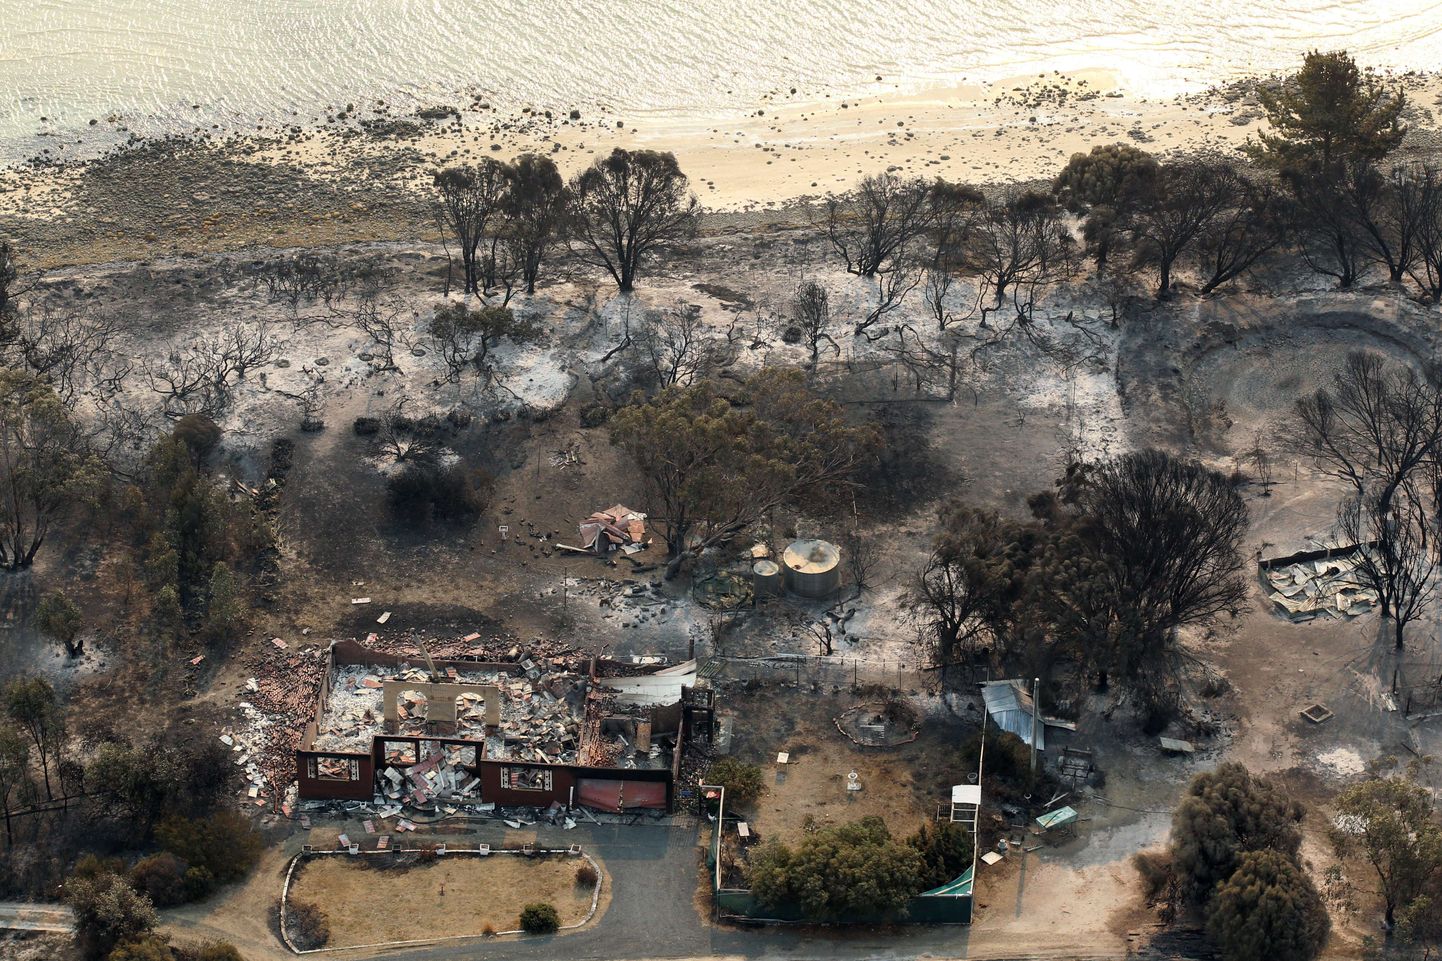 Üleeilsel fotol on näha Austraalia kõige lõunapoolsemat osariiki Tasmaaniat tabanud maastikupõlengute tagajärge.